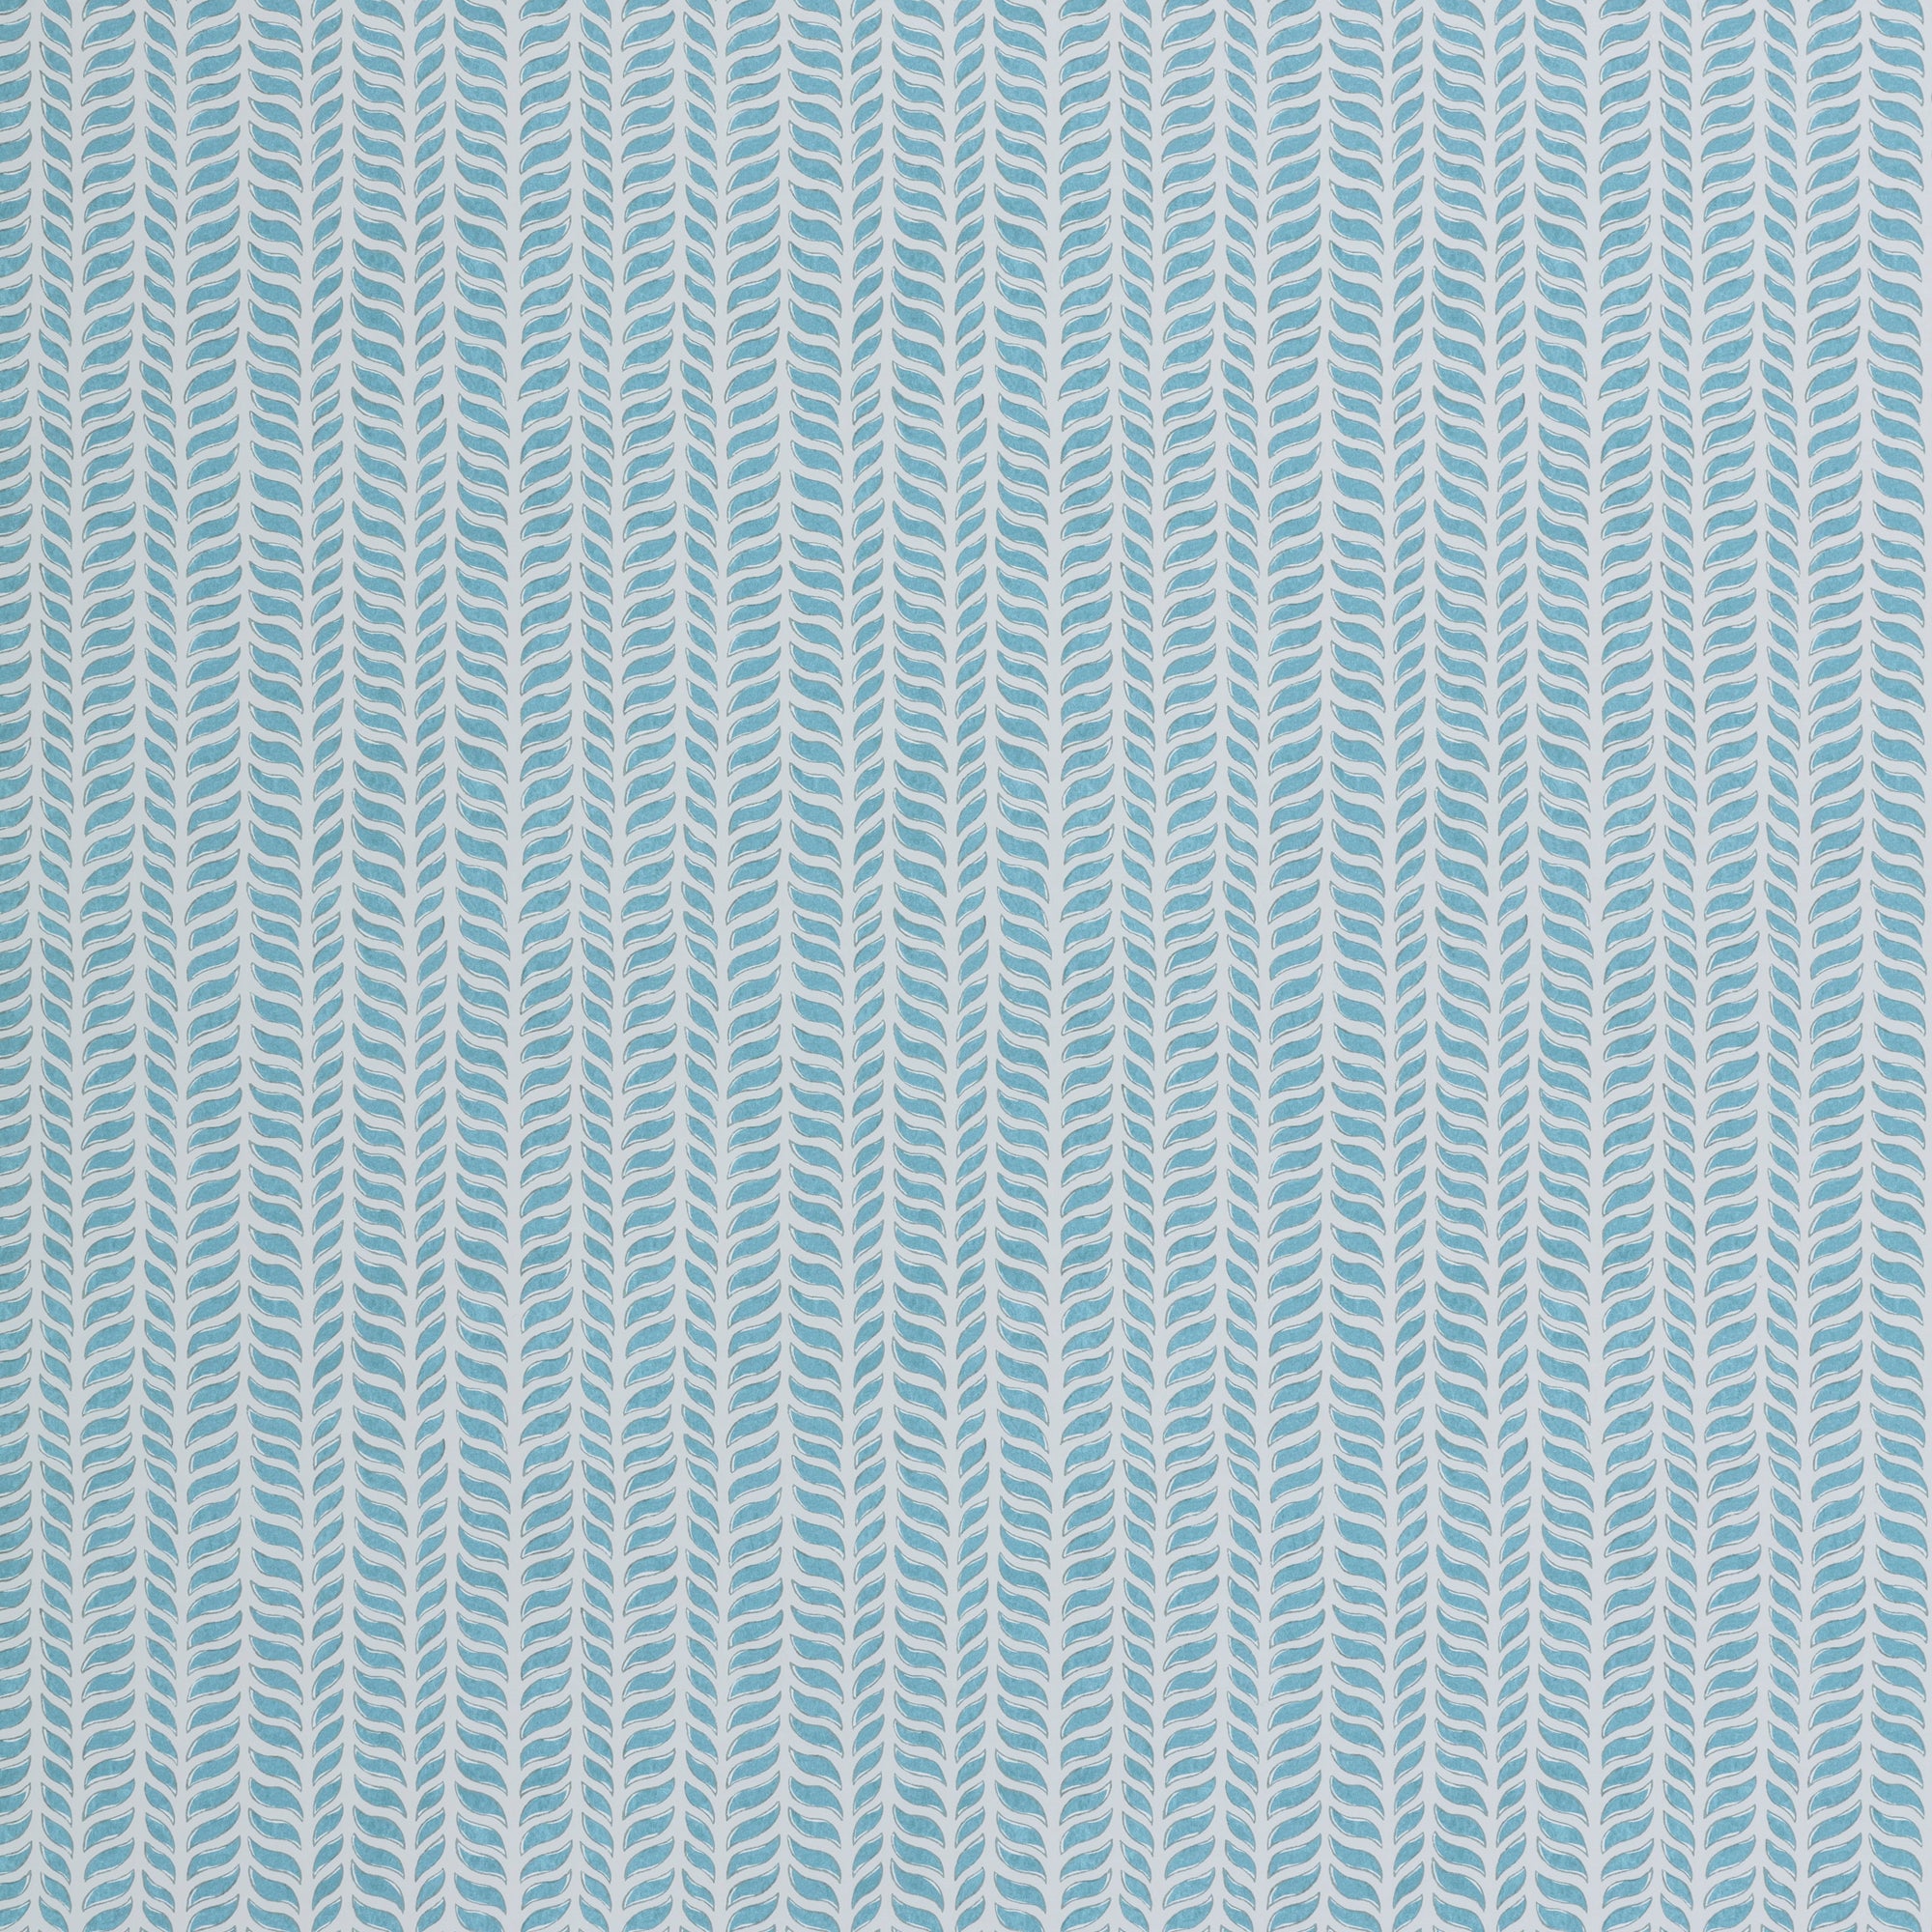 Wallpaper panel in a painterly herringbone print in sky blue on a light blue field.